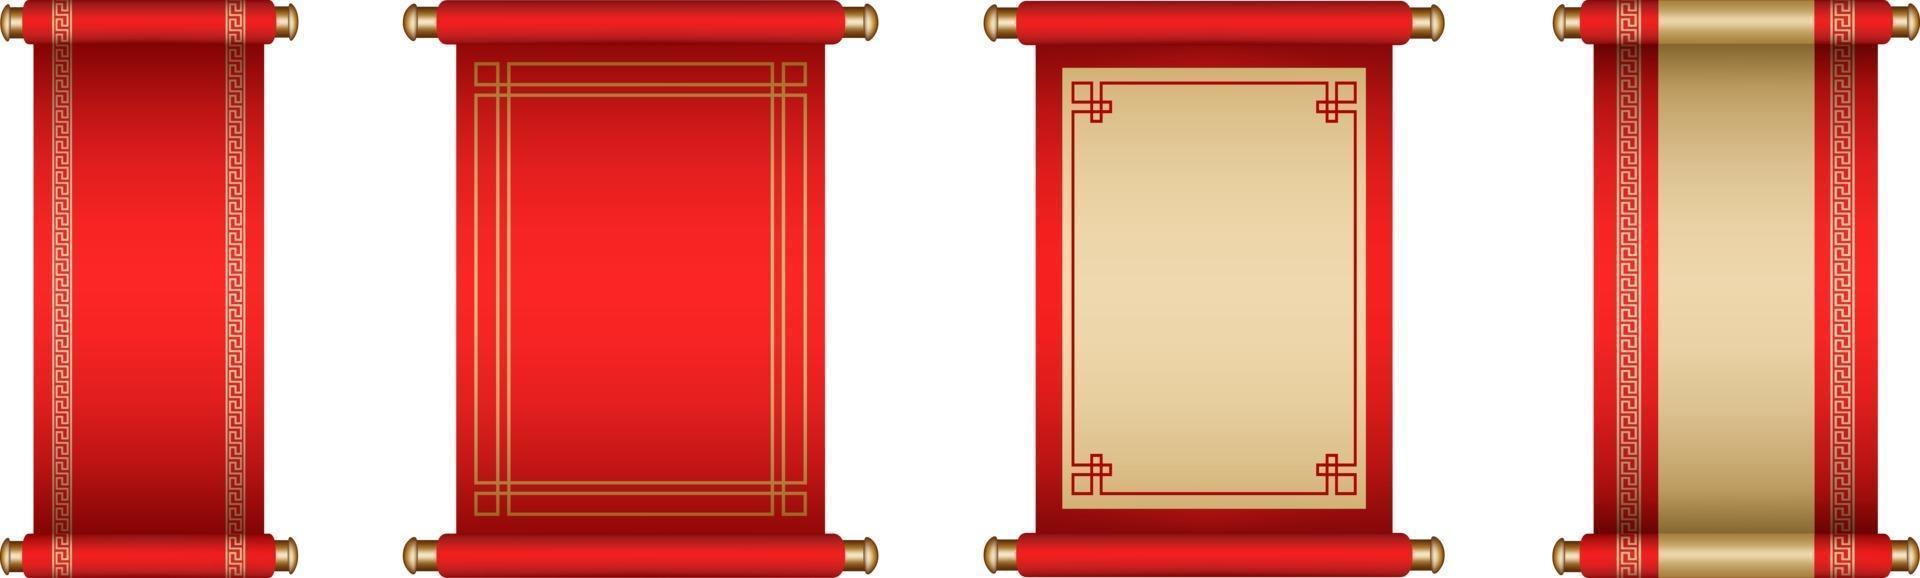 conjunto de pergaminos chinos aislados vector